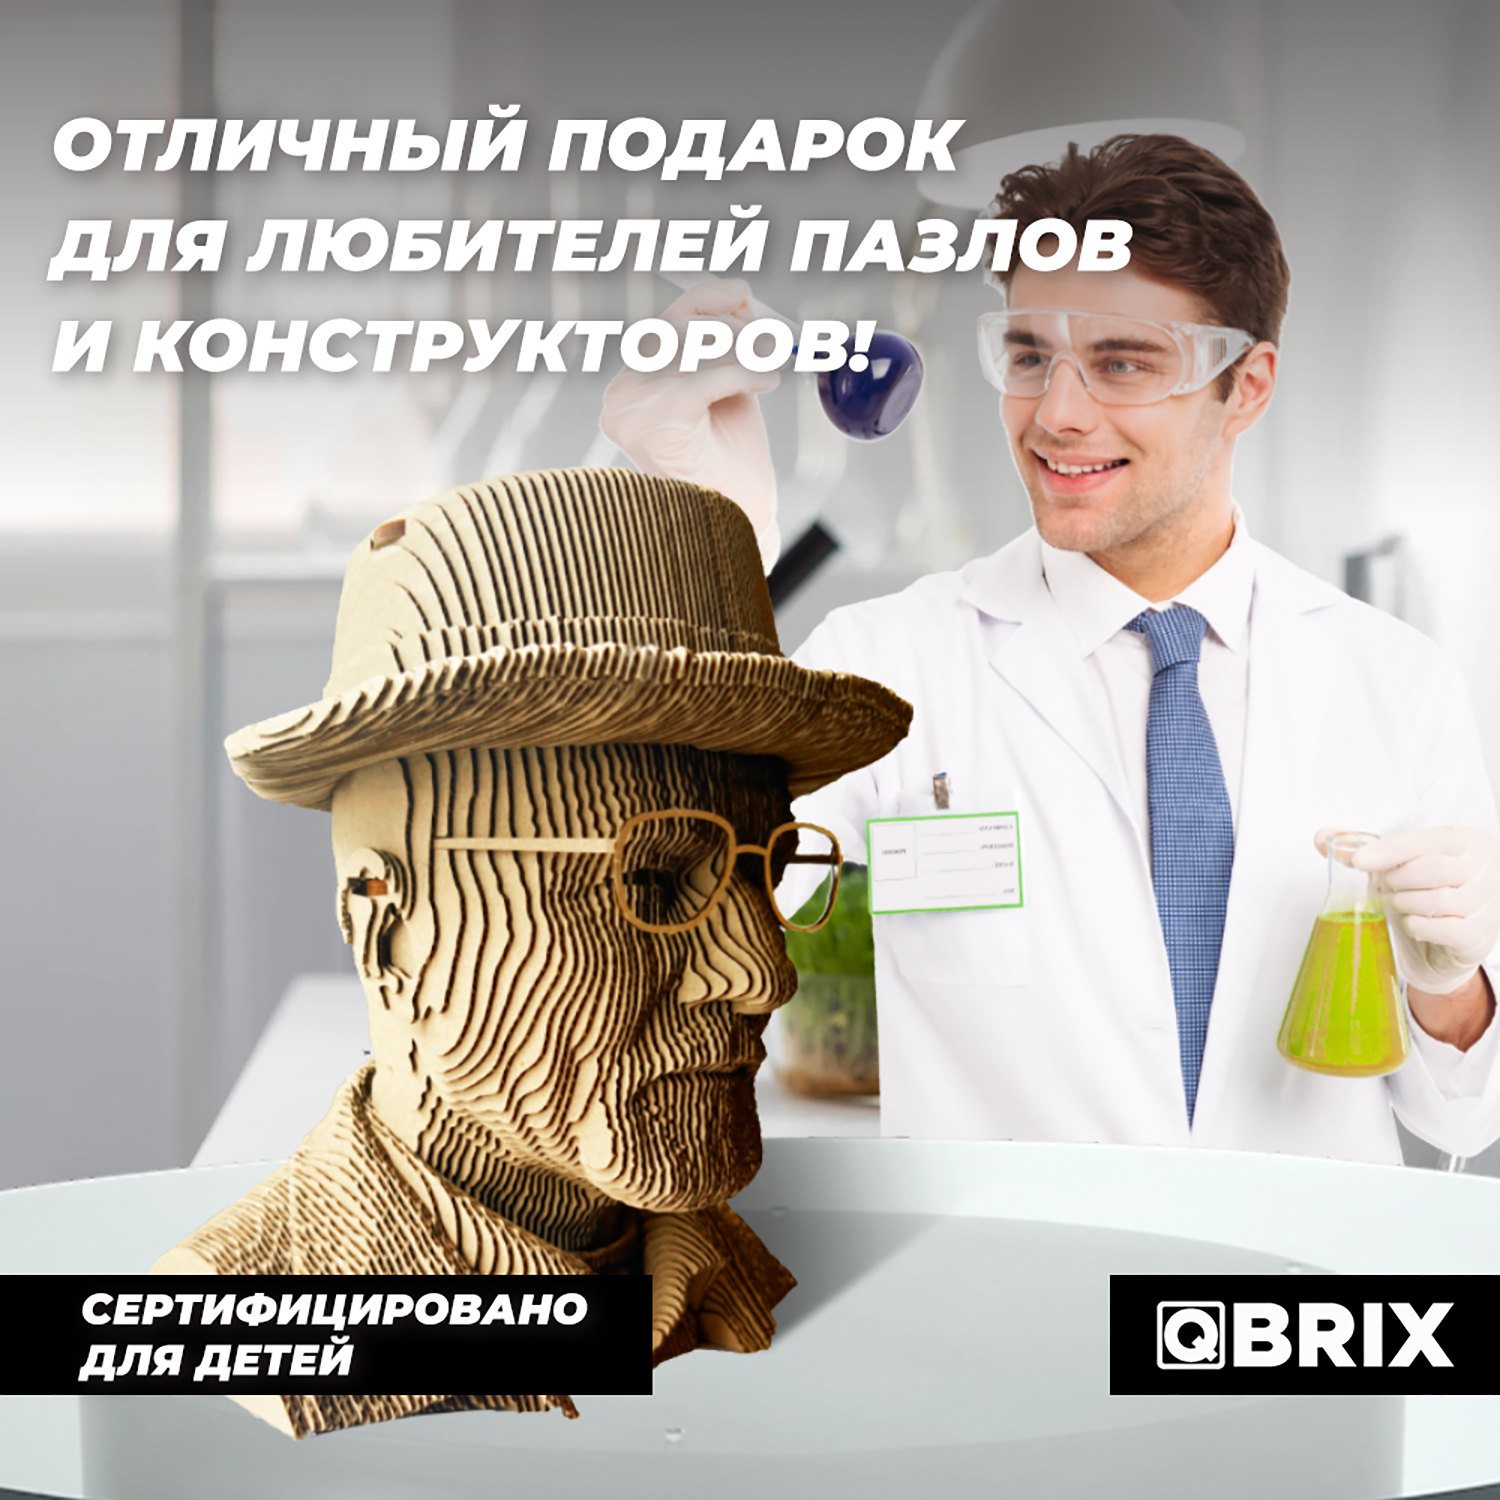 Конструктор QBRIX 3D картонный Учитель химии 20039 20039 - фото 7